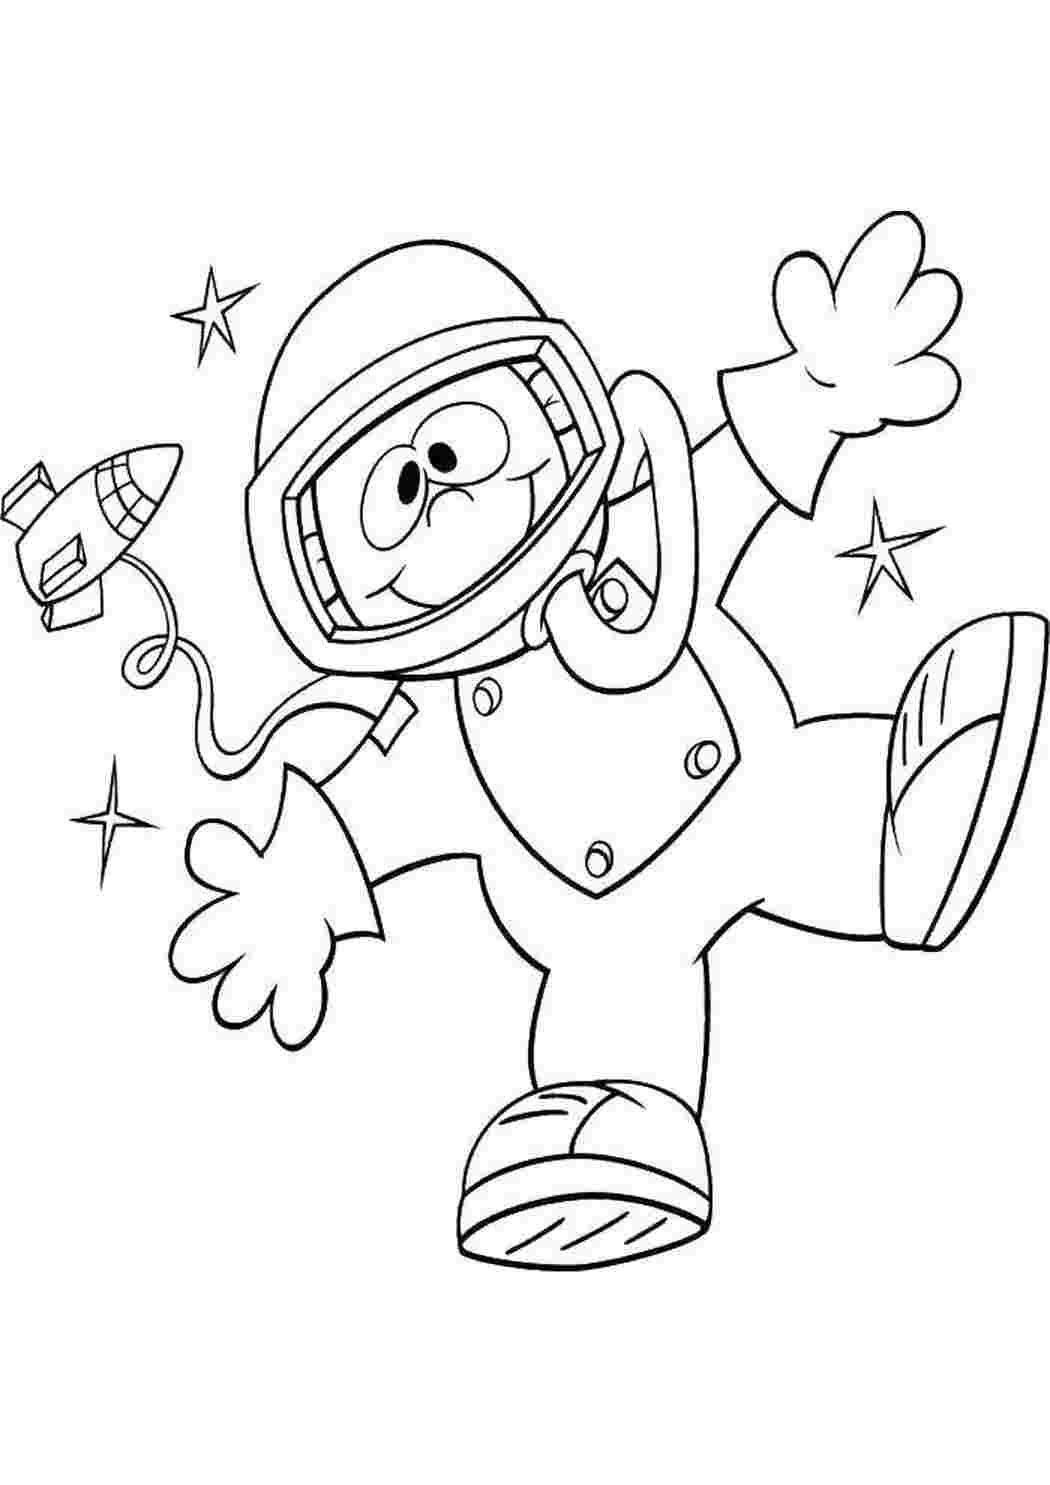 Детские раскраски ко дню космонавтики. Космонавт раскраска для детей. Раскраска день космонавтики для детей. Космонавтика раскраски для детей. Космос раскраска для детей.